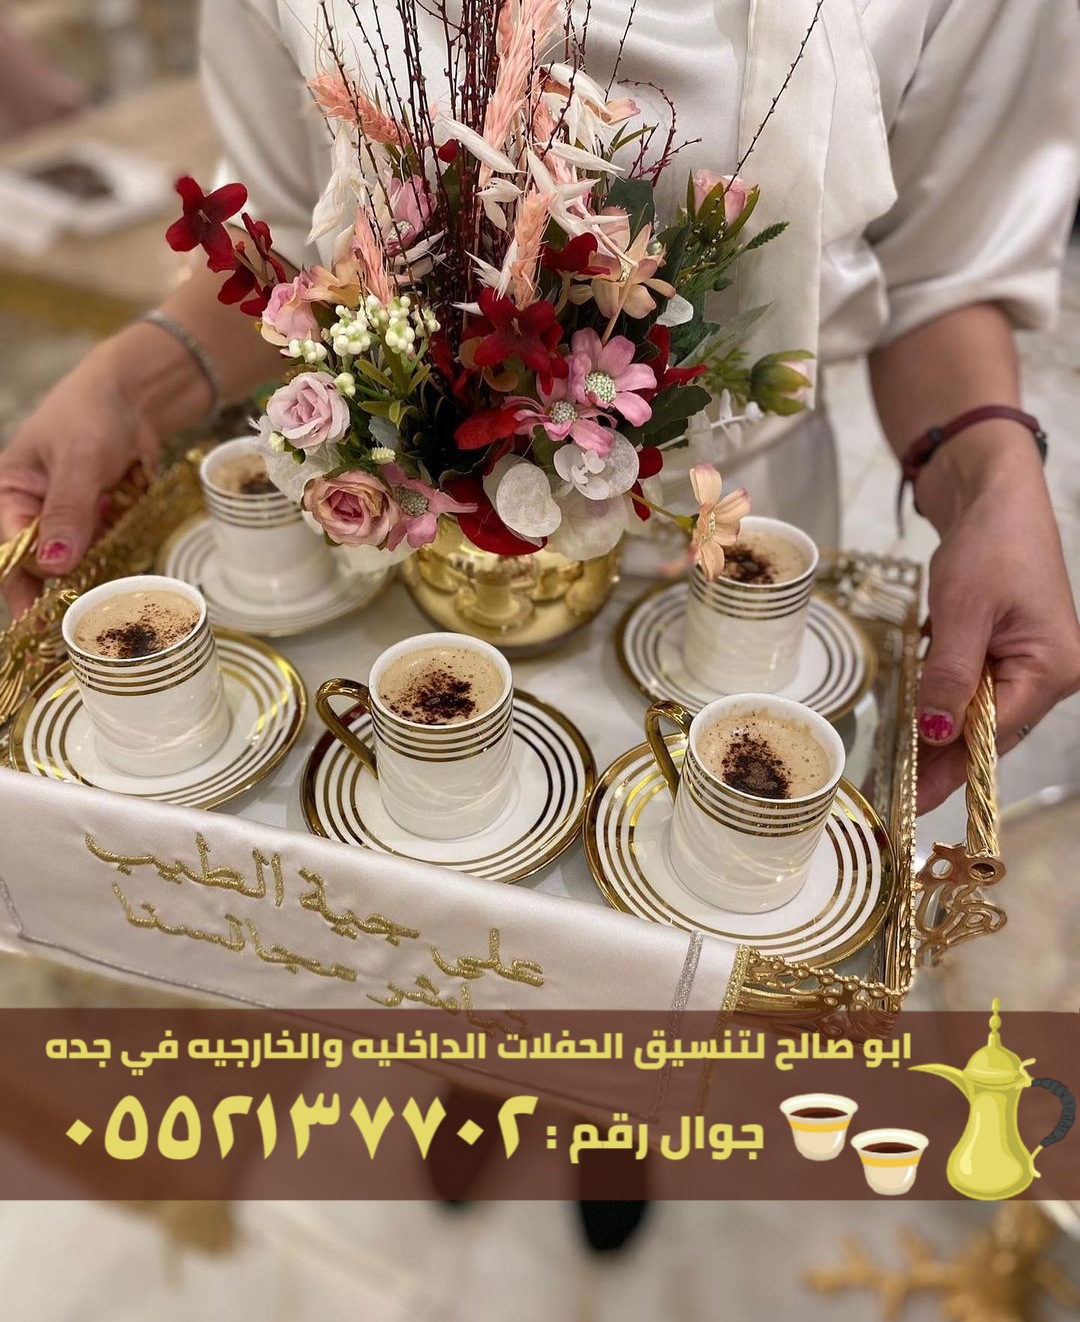 فريق صبابين قهوة للضيافة في جدة, 0552137702 P_2636fuksn1